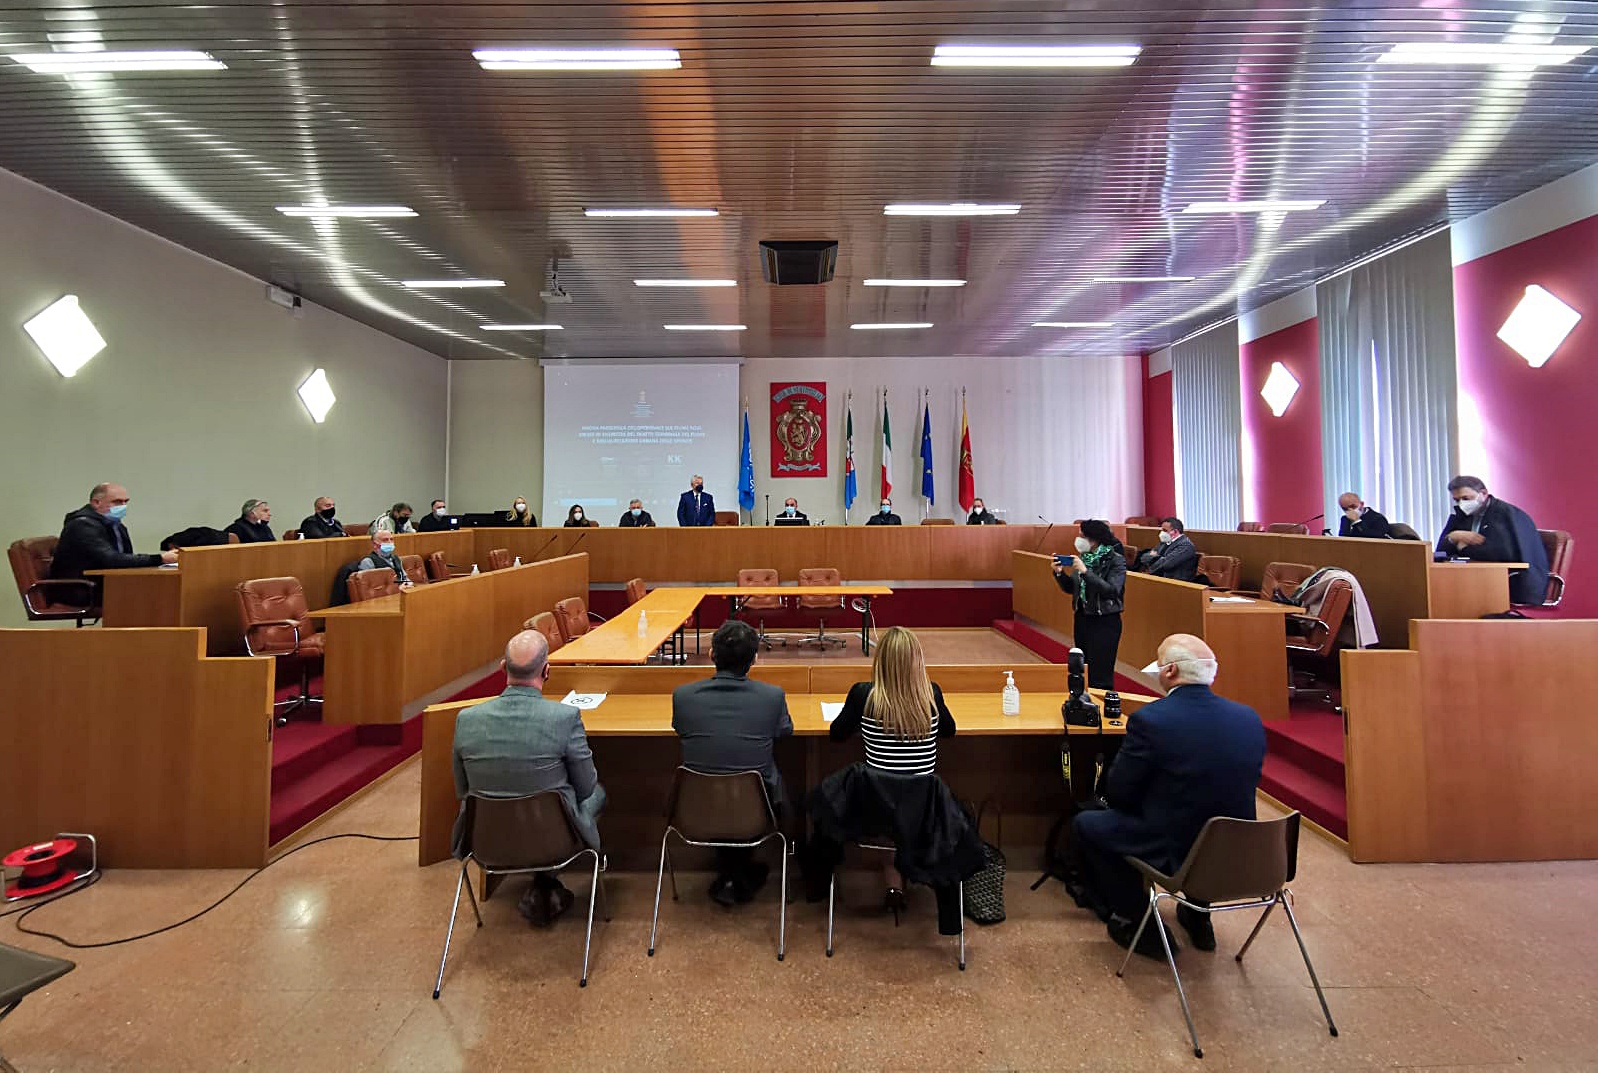 Ventimiglia presentazione progetto passerella sala consiglio comunale_04